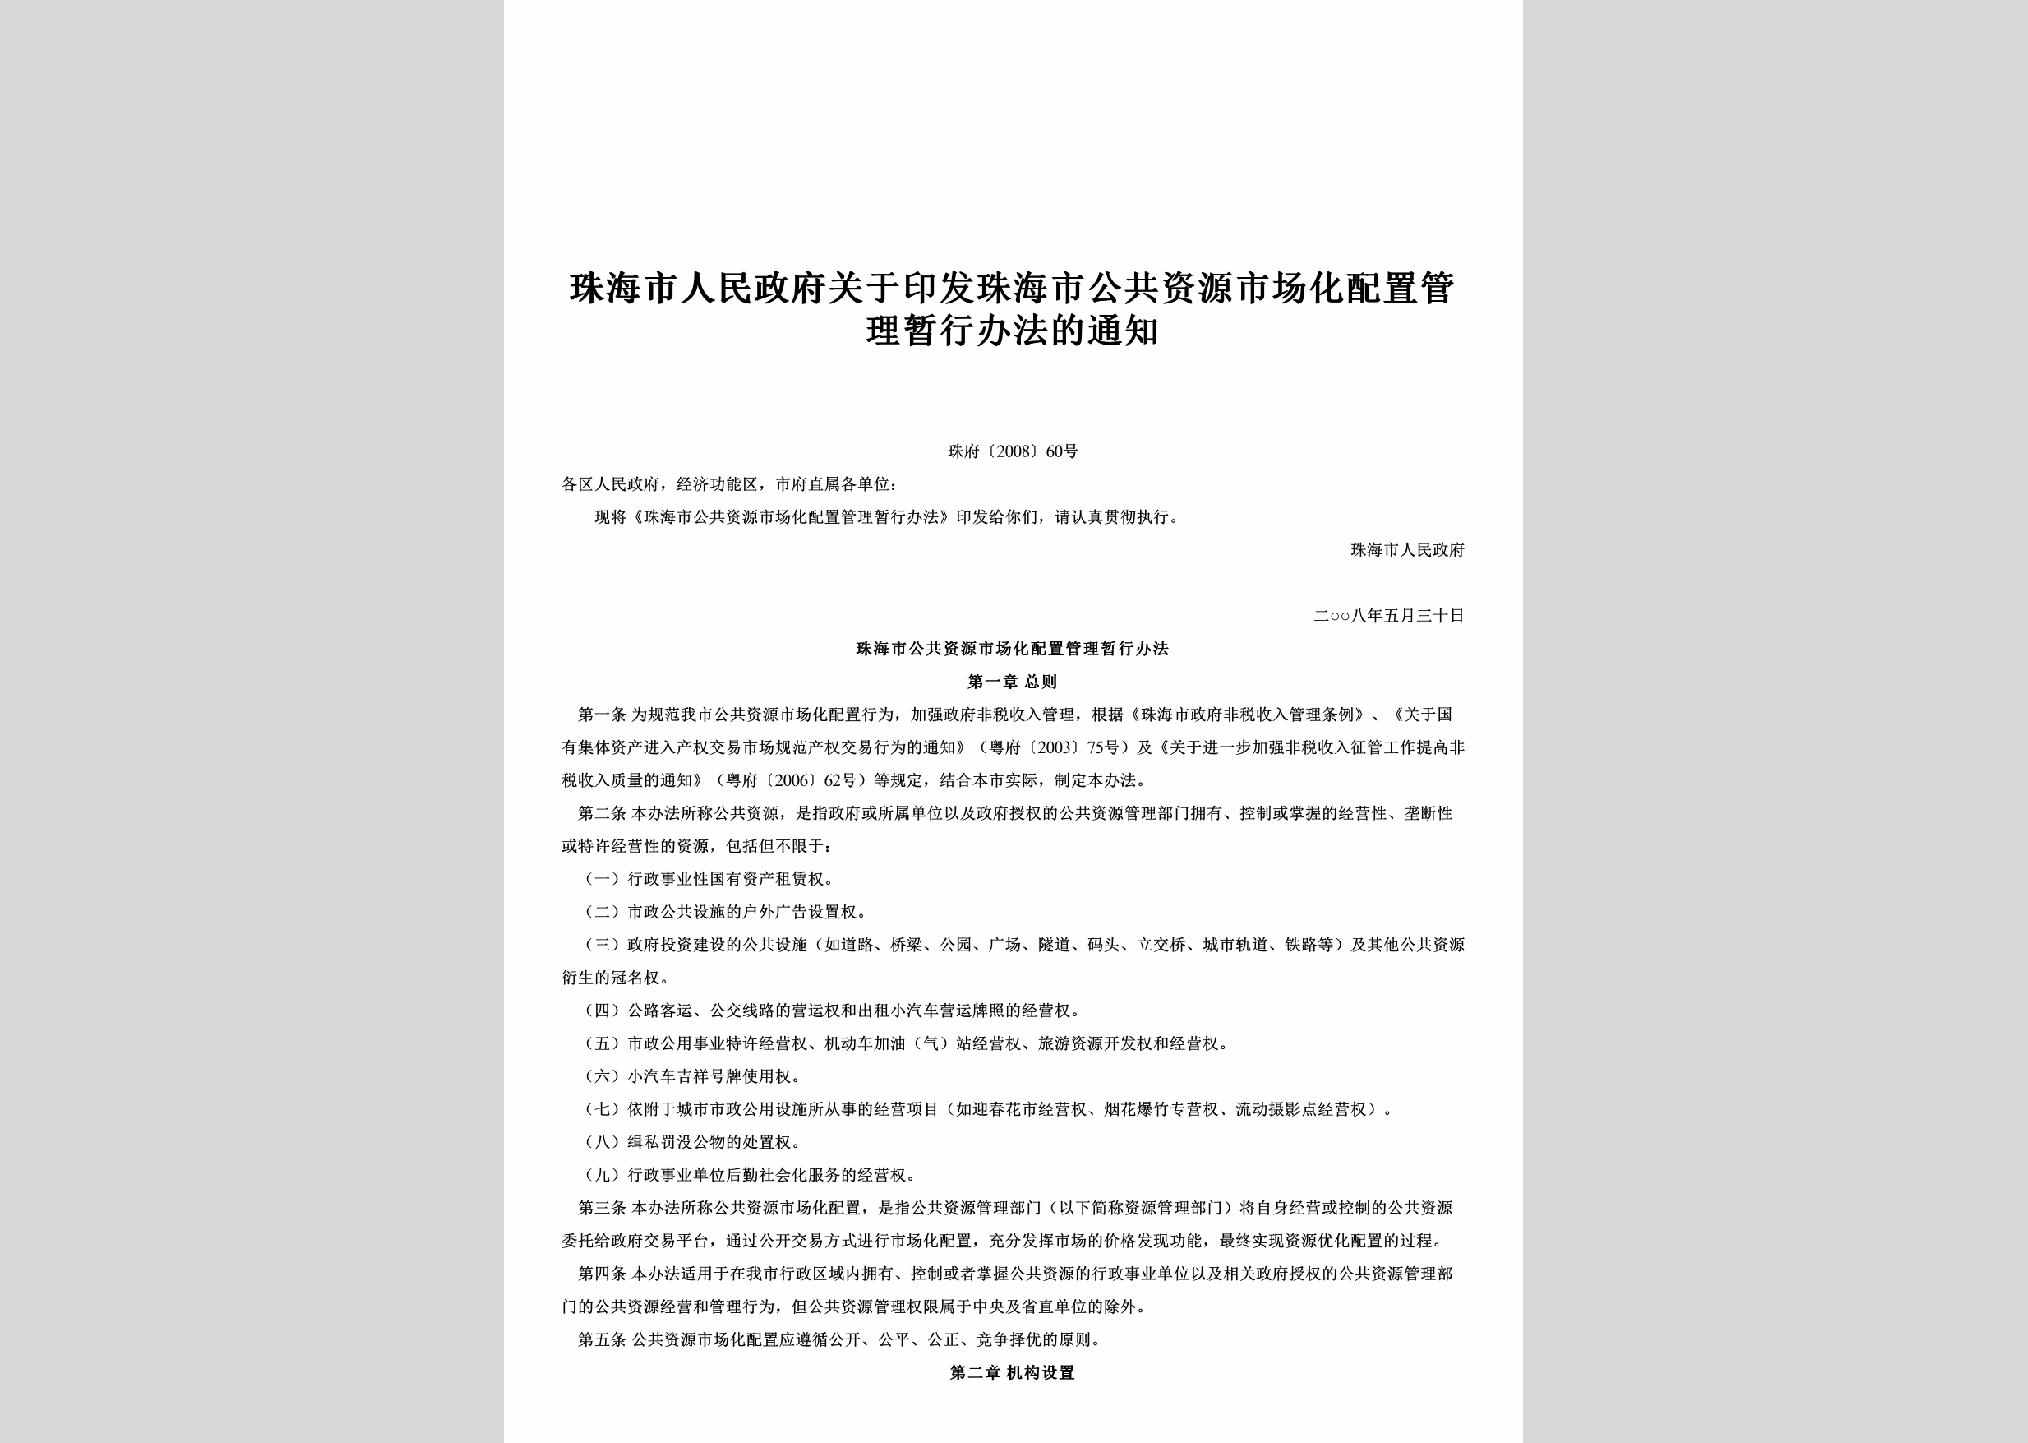 珠府[2008]60号：关于印发珠海市公共资源市场化配置管理暂行办法的通知